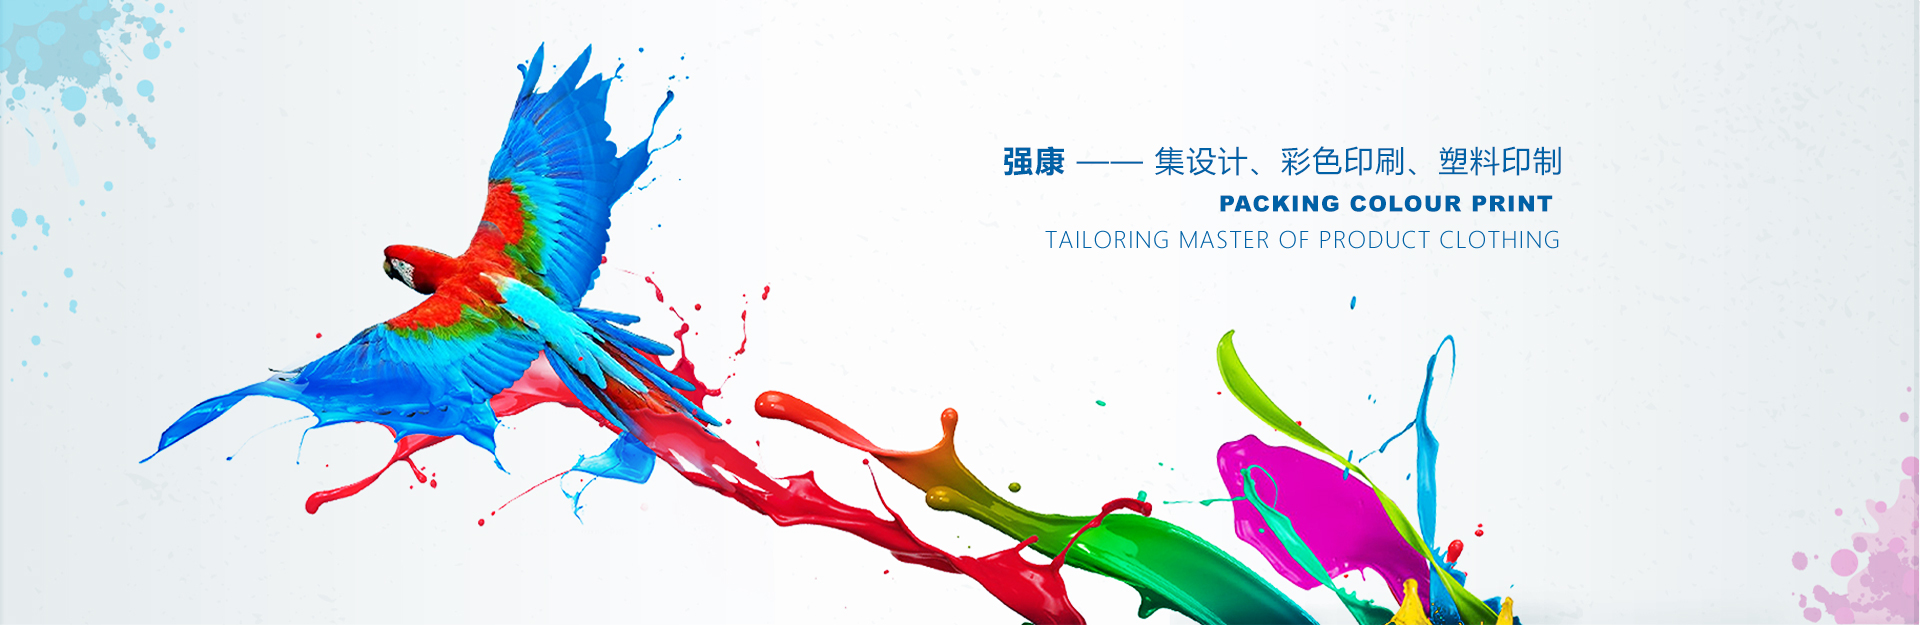 广西南宁强康塑料彩印包装有限公司是塑料袋厂家、复合袋厂家